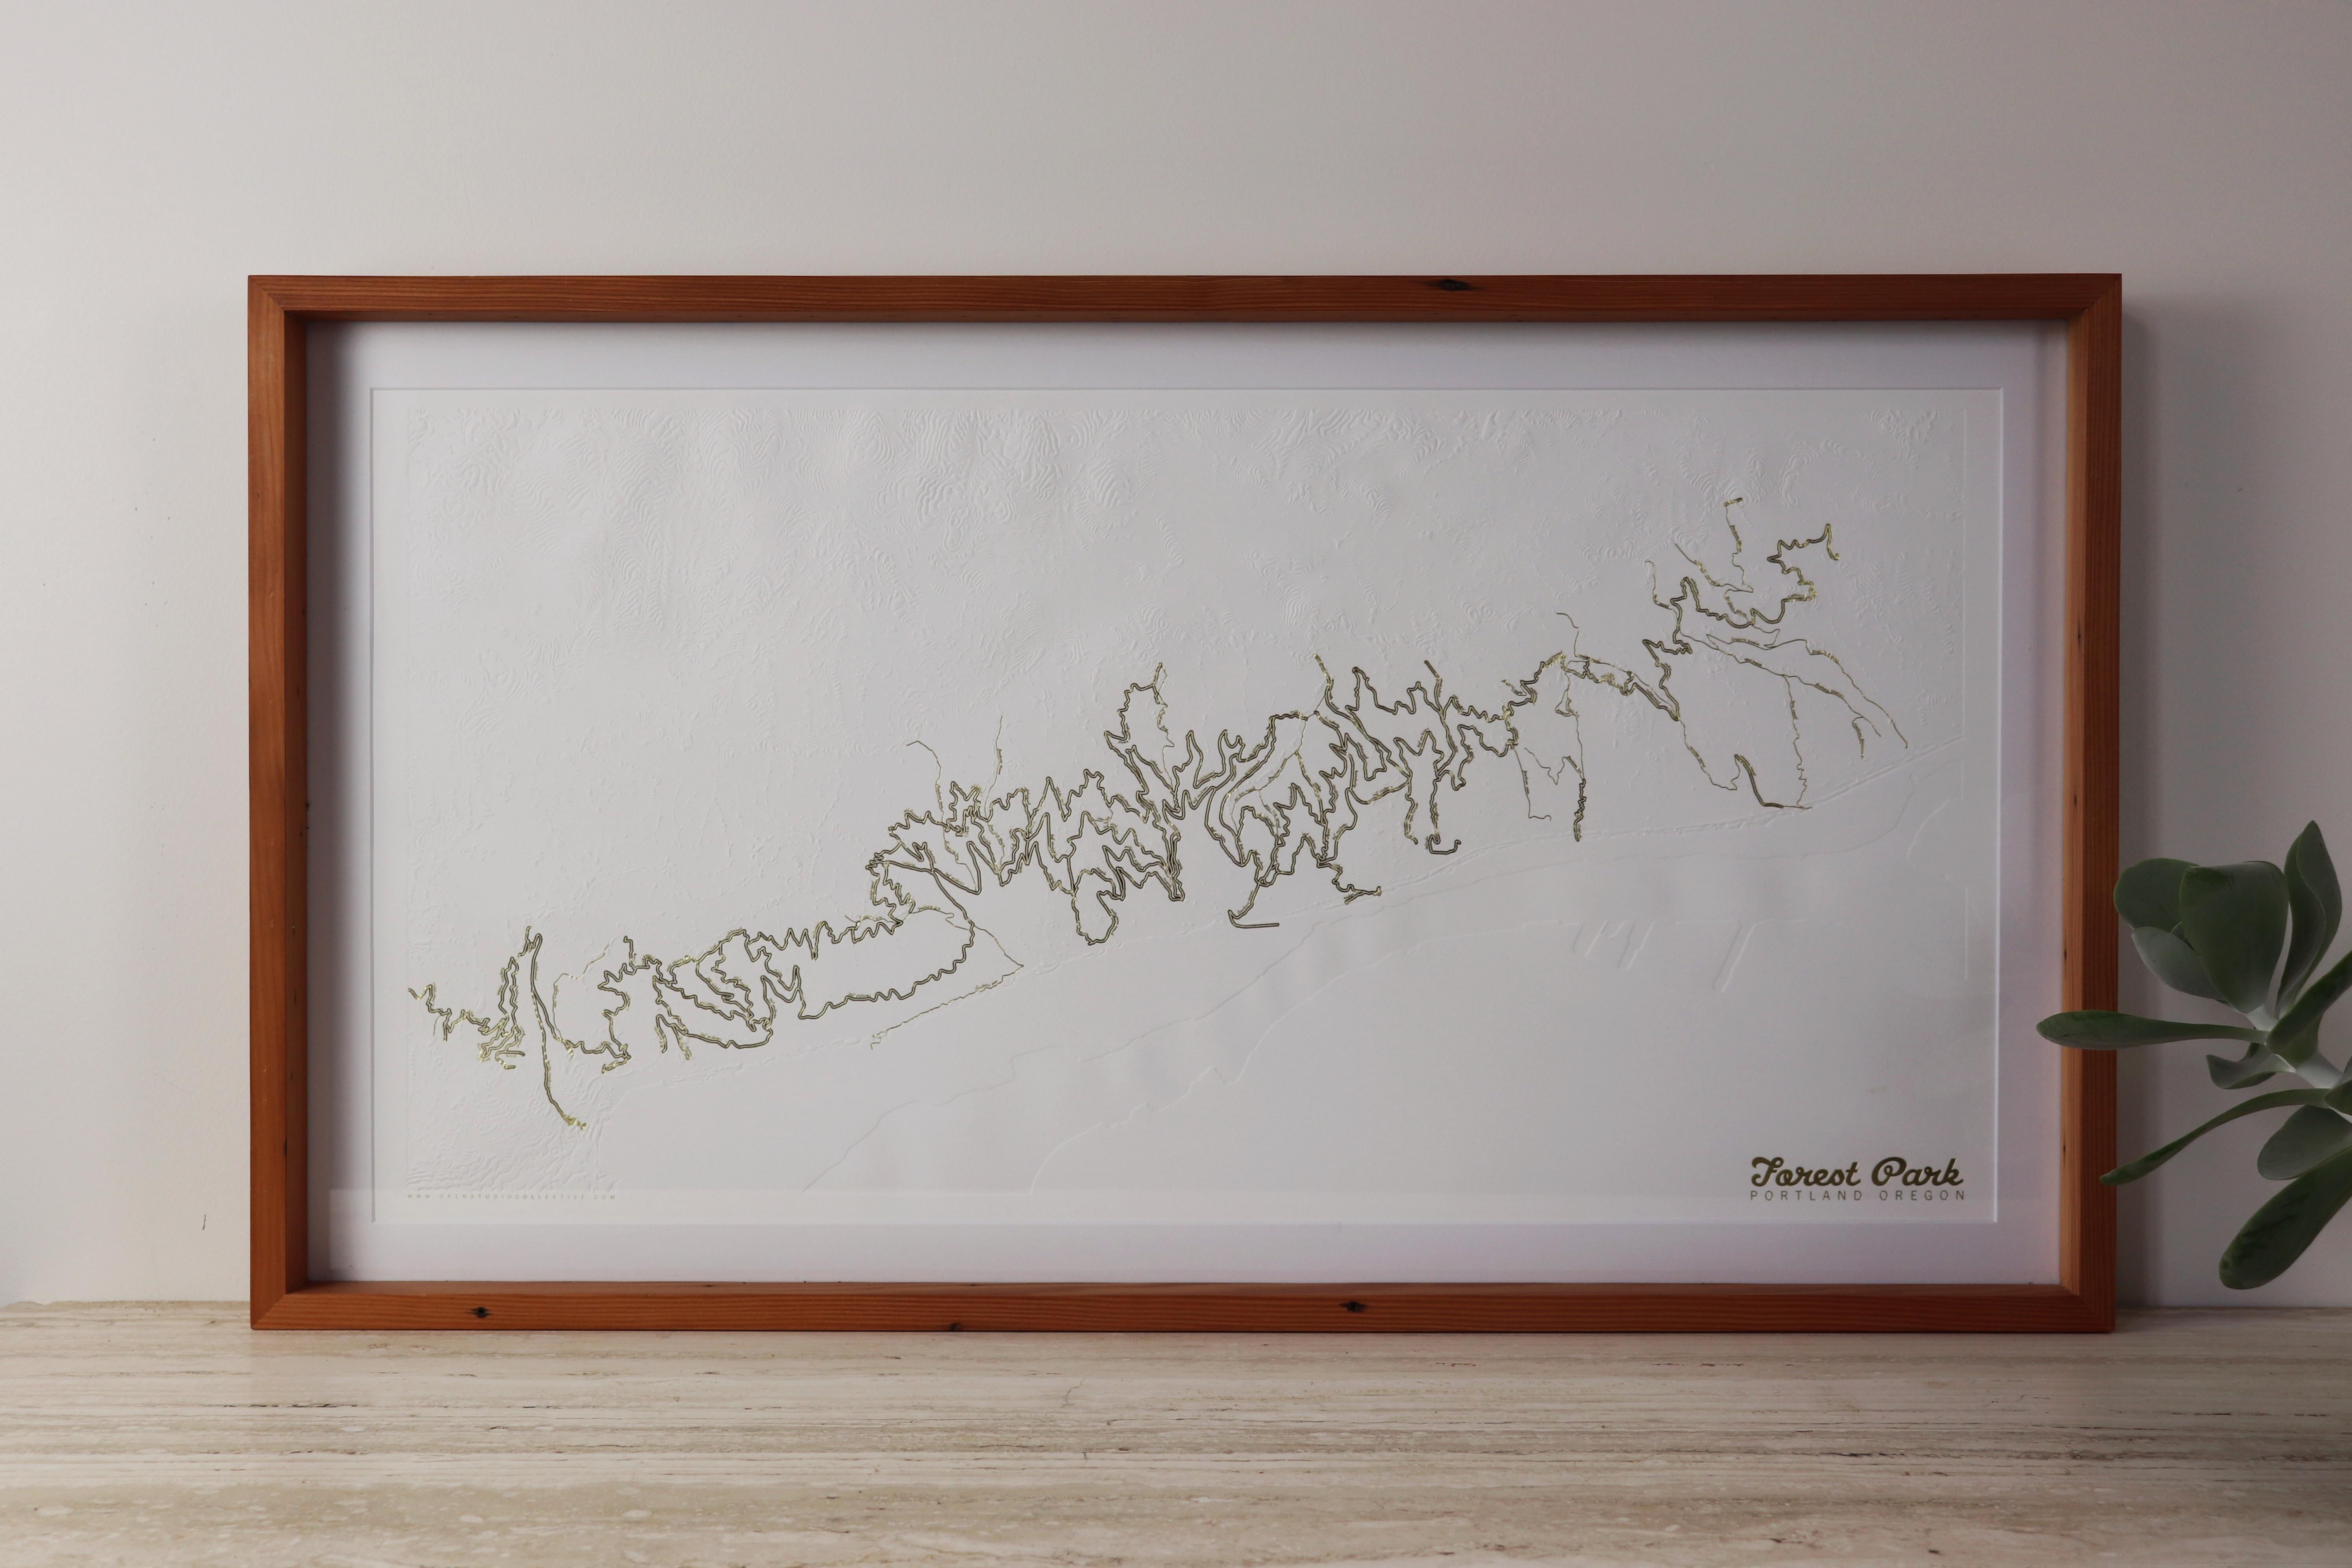 Wunderschöne minimalistische topografische Karte von Portlands Forest Park in limitierter Auflage mit goldgeprägten Wander- und Laufwegen von der Designerin Allison Bryan. Forest Park ist eines der größten städtischen Waldreservate in den